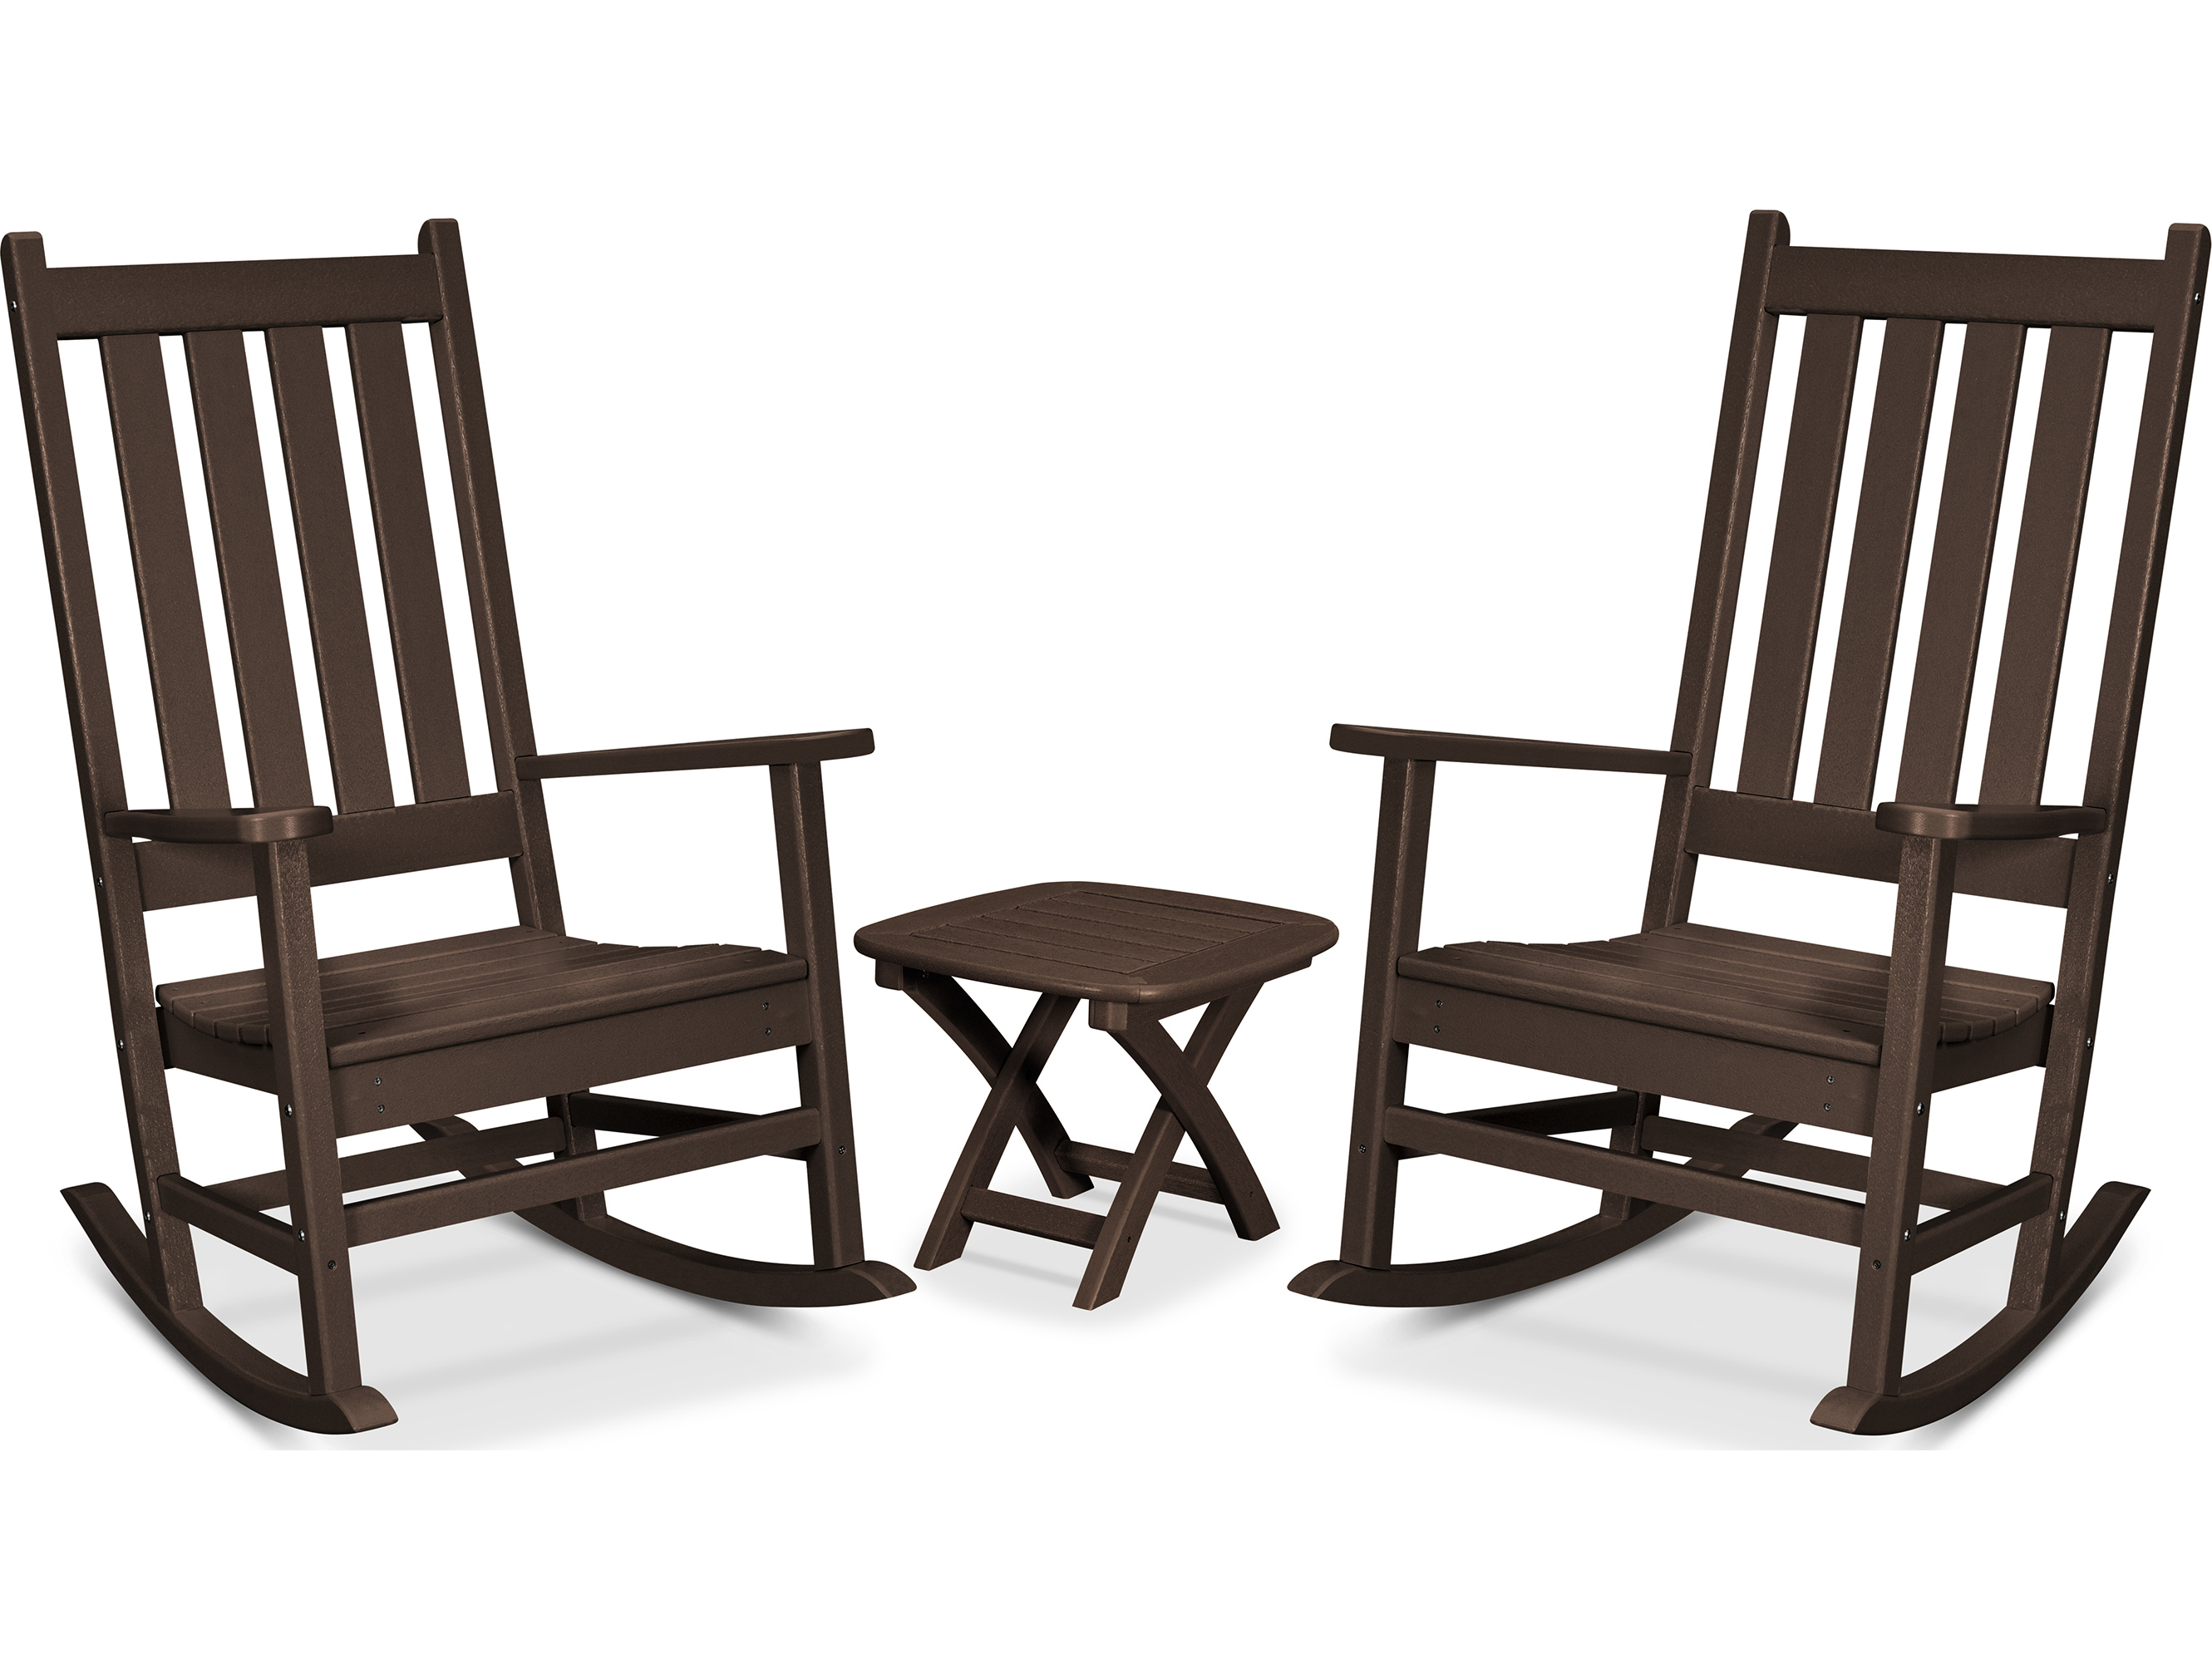 Trex Outdoor Furniture Cape Cod 3 Piece Porch Rocking Chair Set In Vintage Lantern Trxtxs4551vl